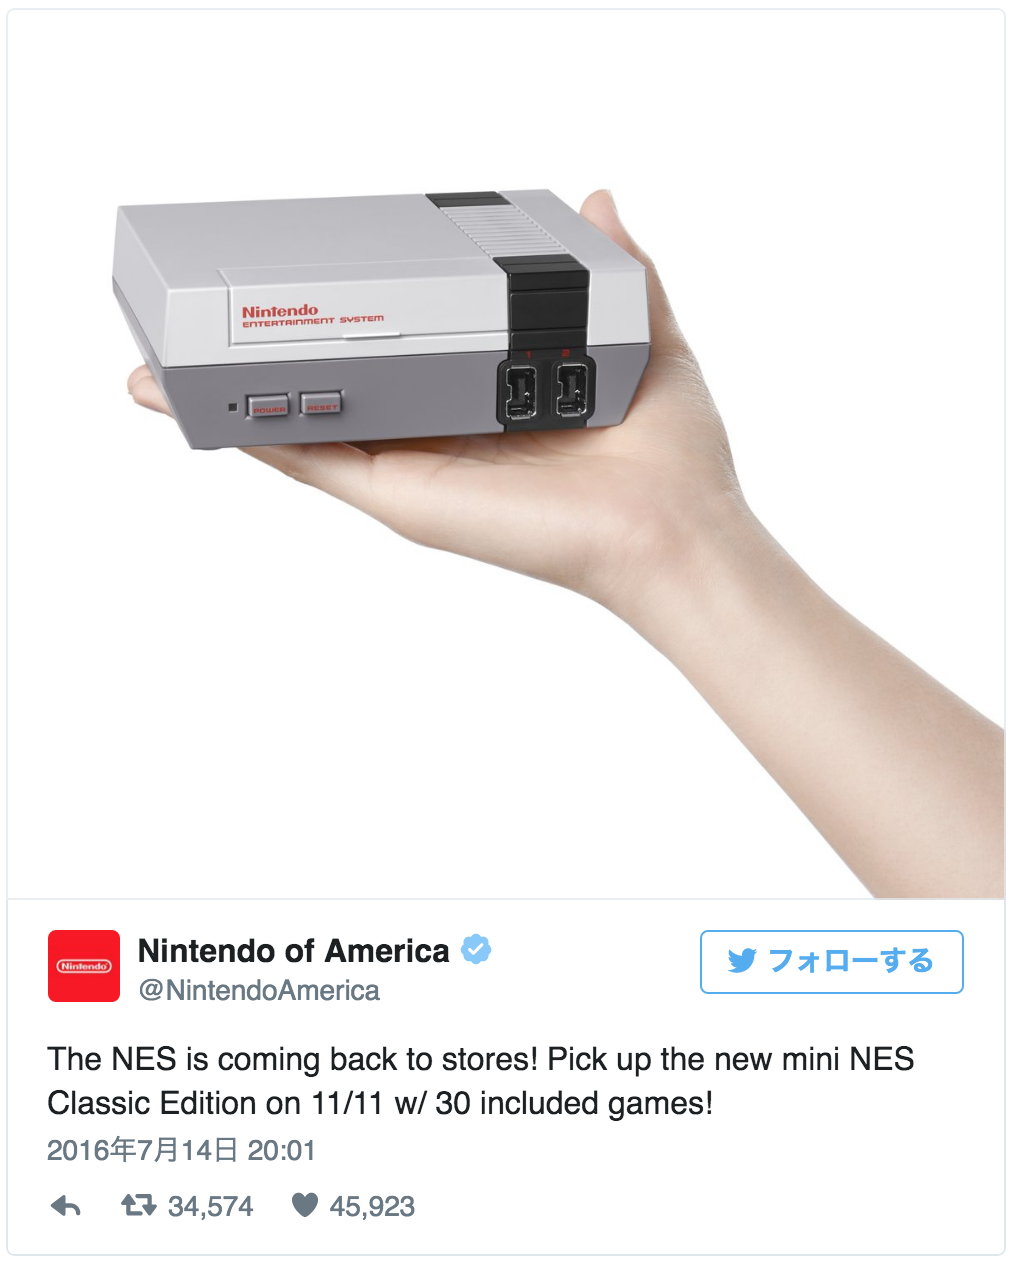 【美國任天堂】推出復刻版迷你 NES 主機